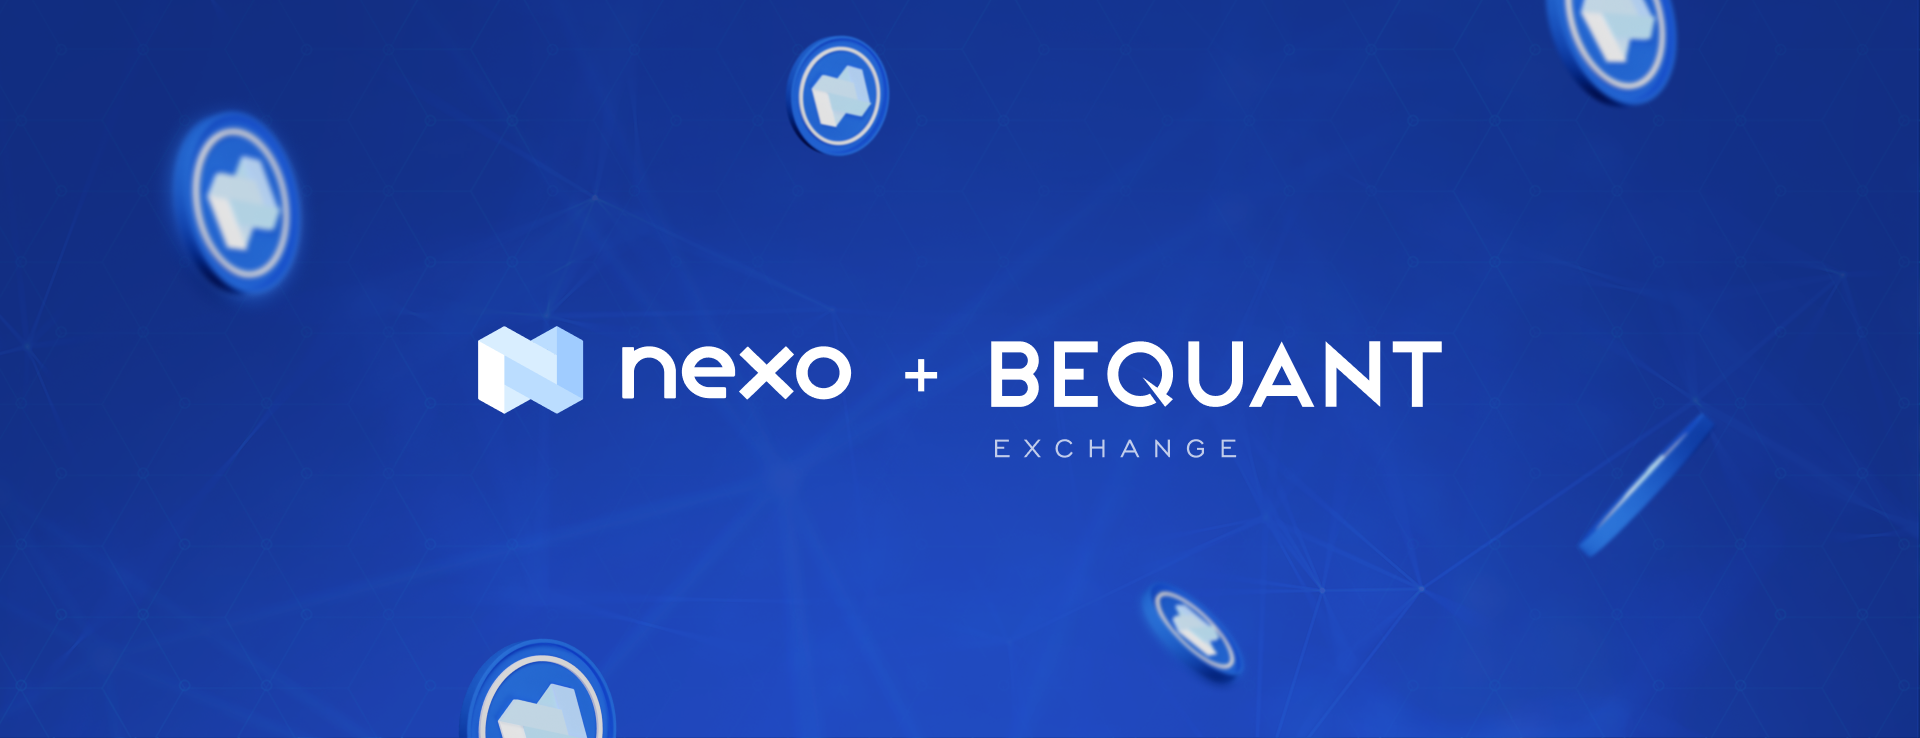 BEQUANT Exchange List NEXO Token on Digital Assets Trading Platform